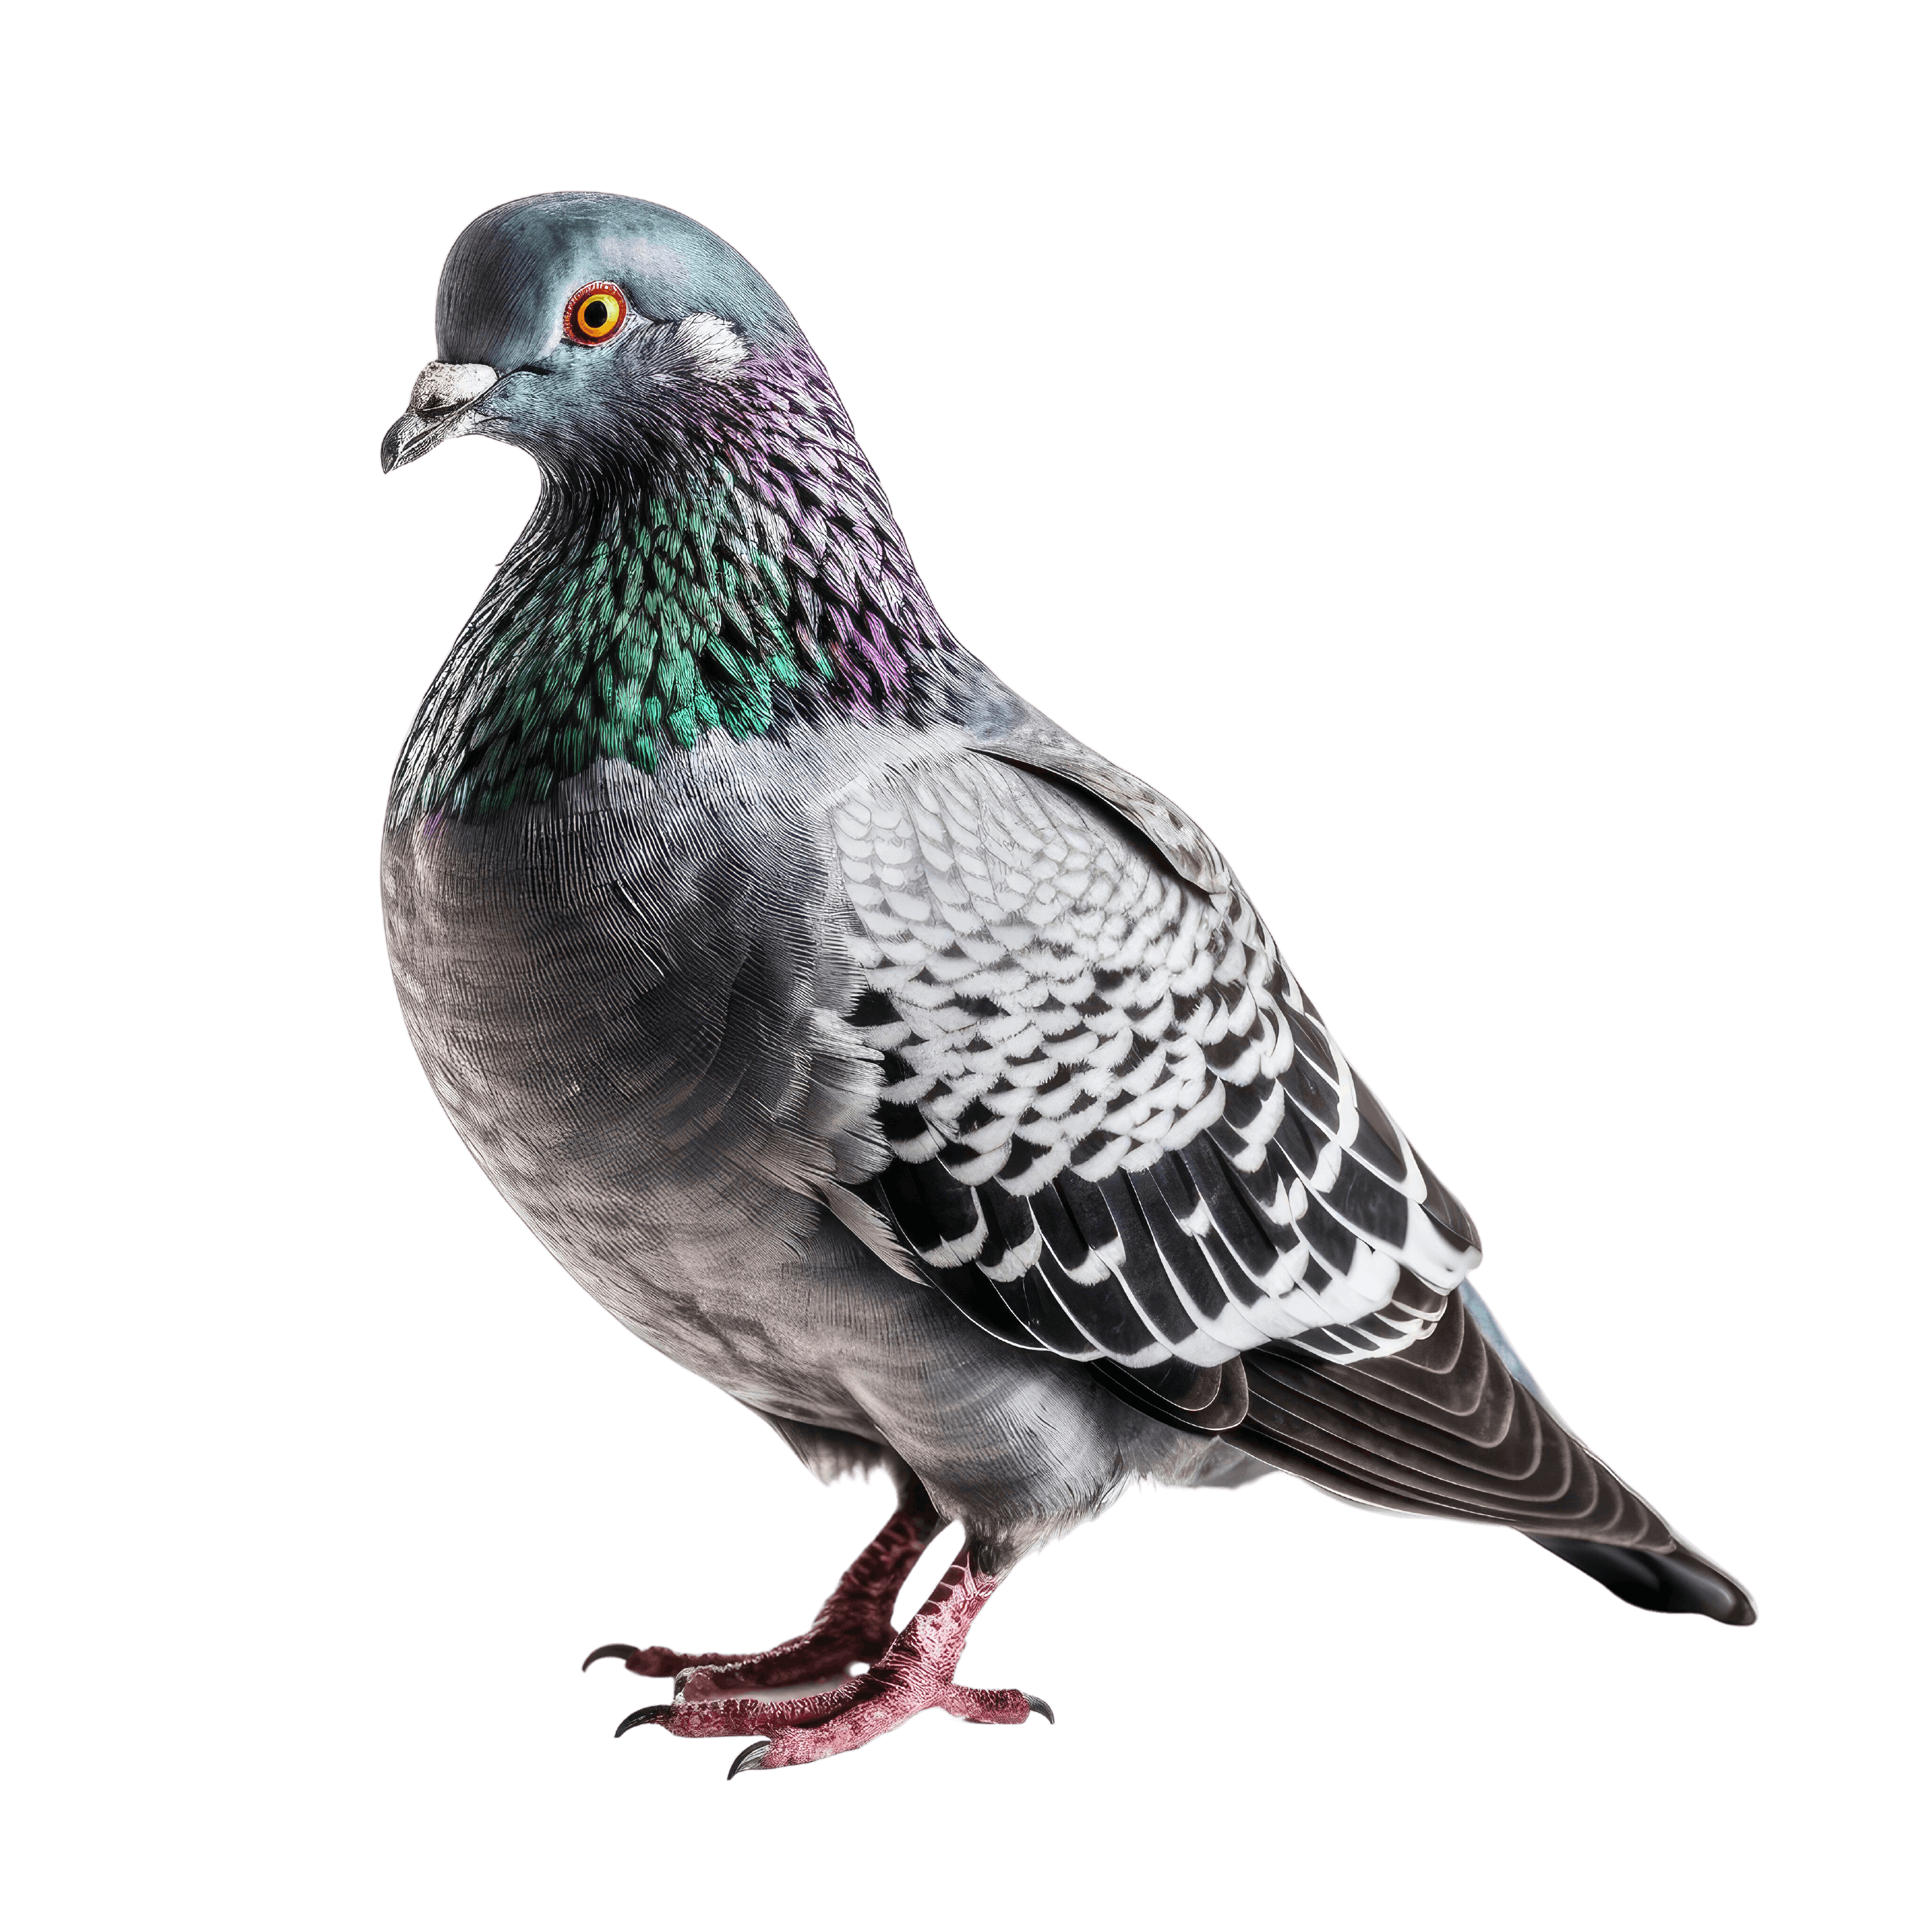 Comment éloigner les pigeons ? 